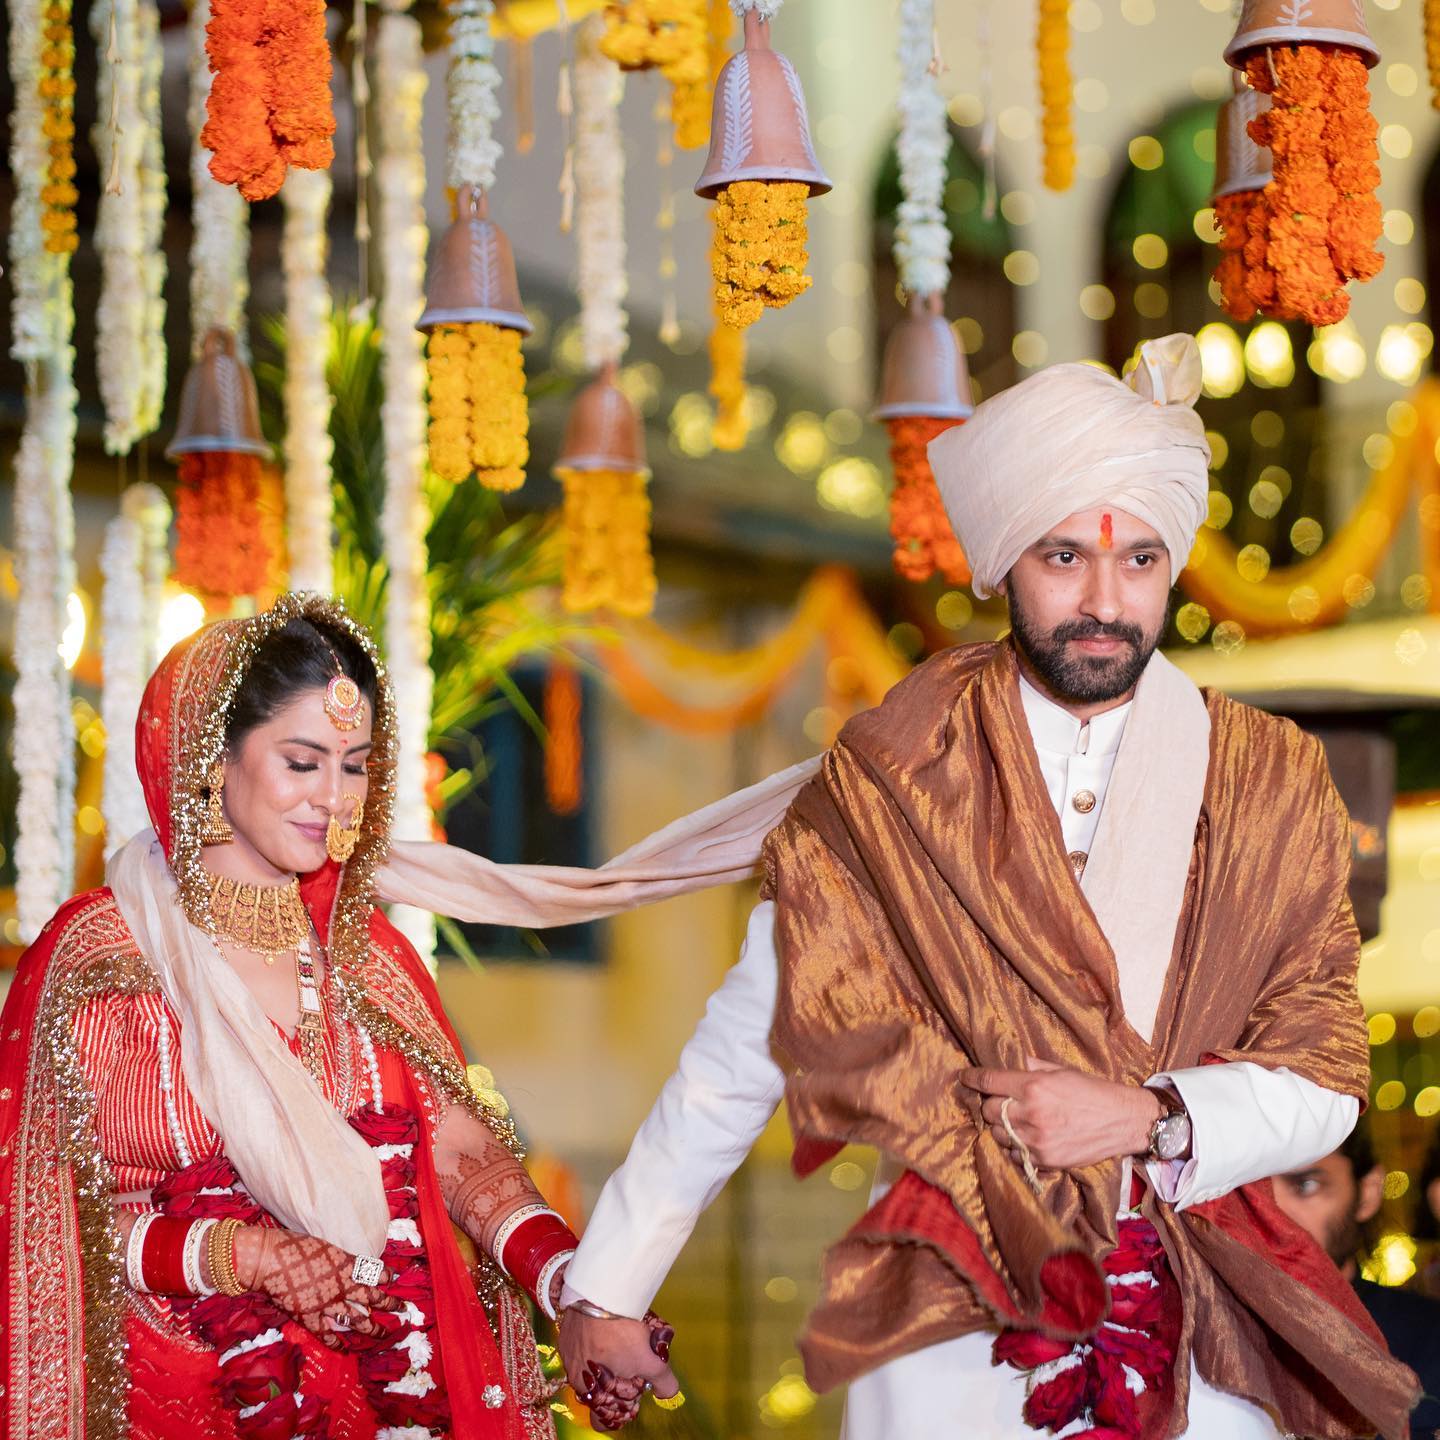 Photos: With Vikrant Massey-Sheetal Thakur & Farhan Akhtar-Shibani Dandekar Getting Married, It Was A 'Wedding Weekend' For Bollywood